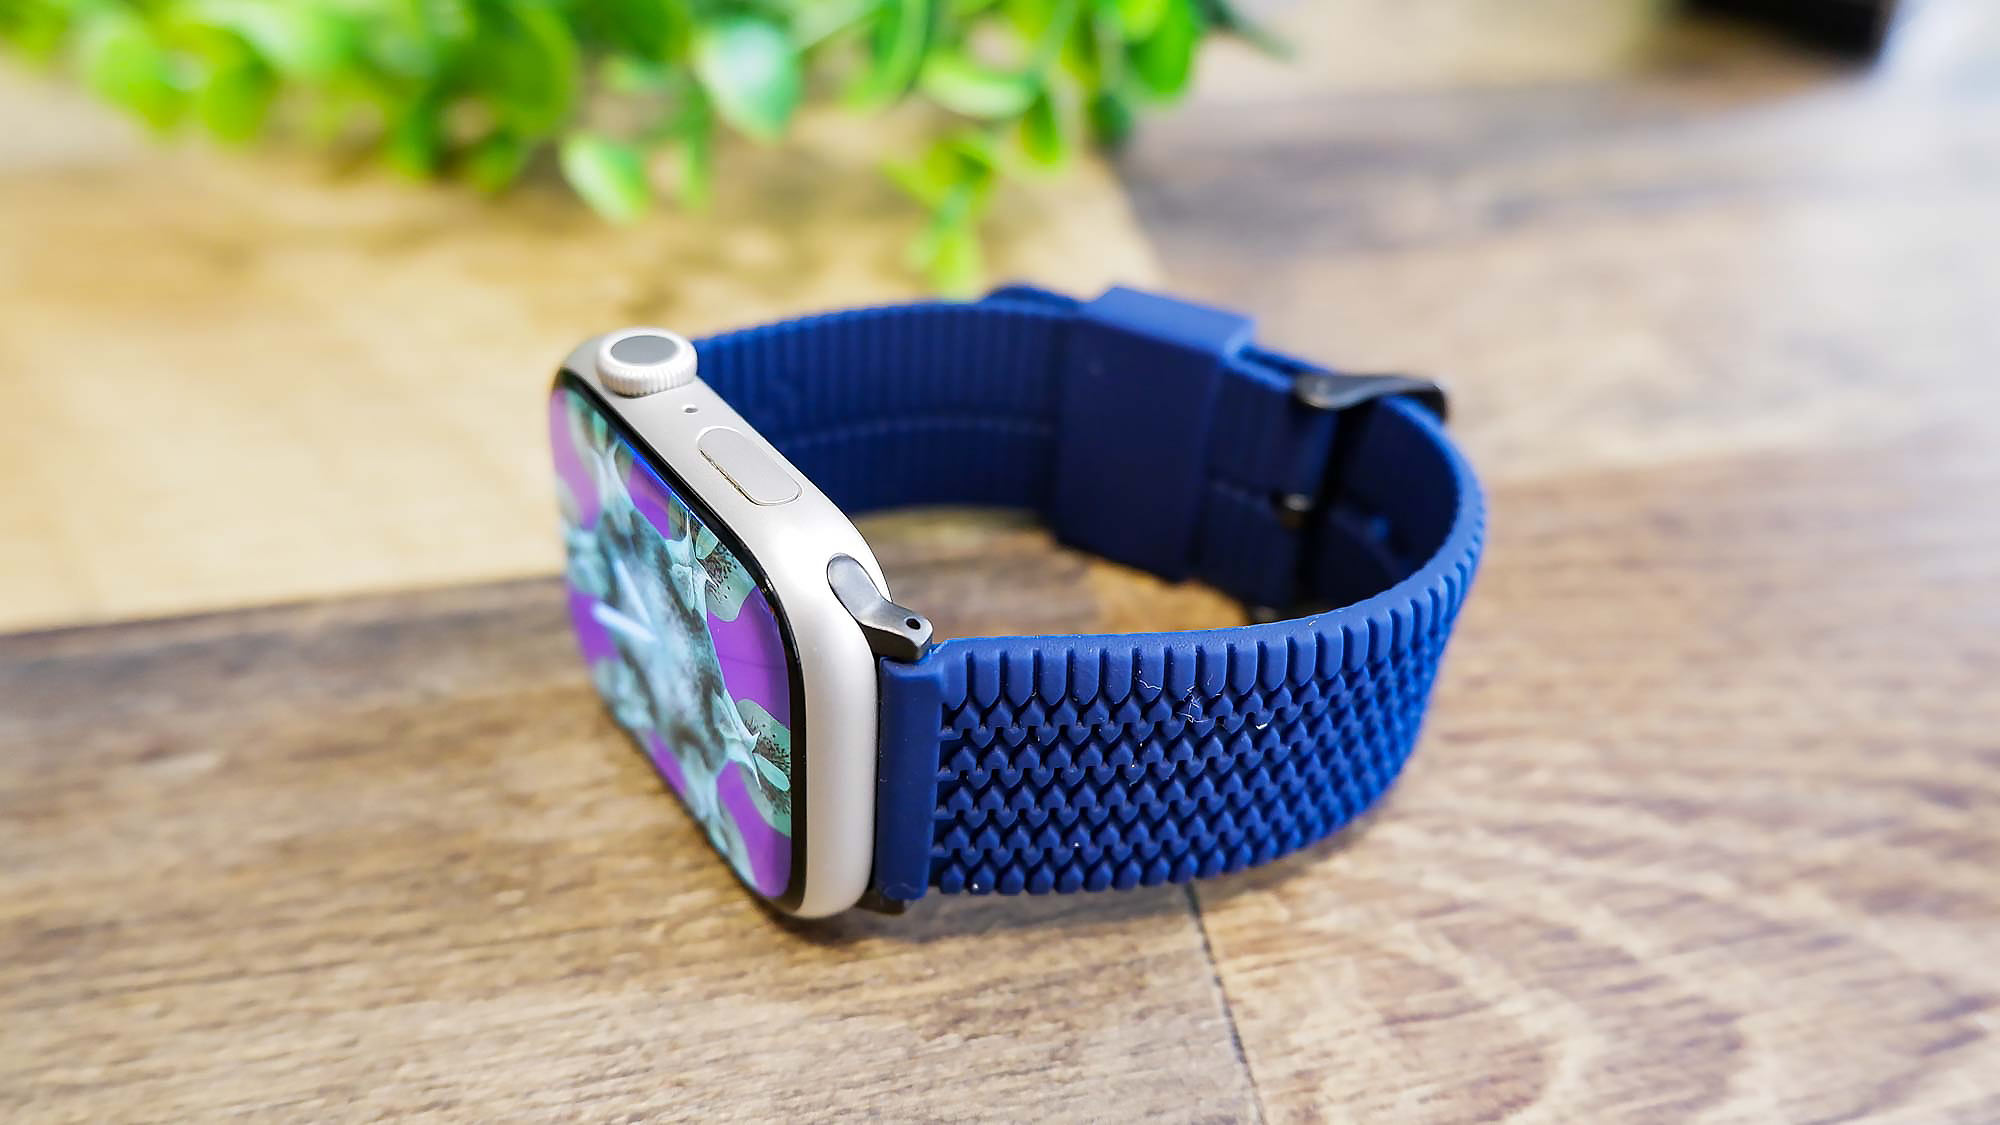 Best Apple Watch bands: Carterjett Tire Tread Apple Watch Band